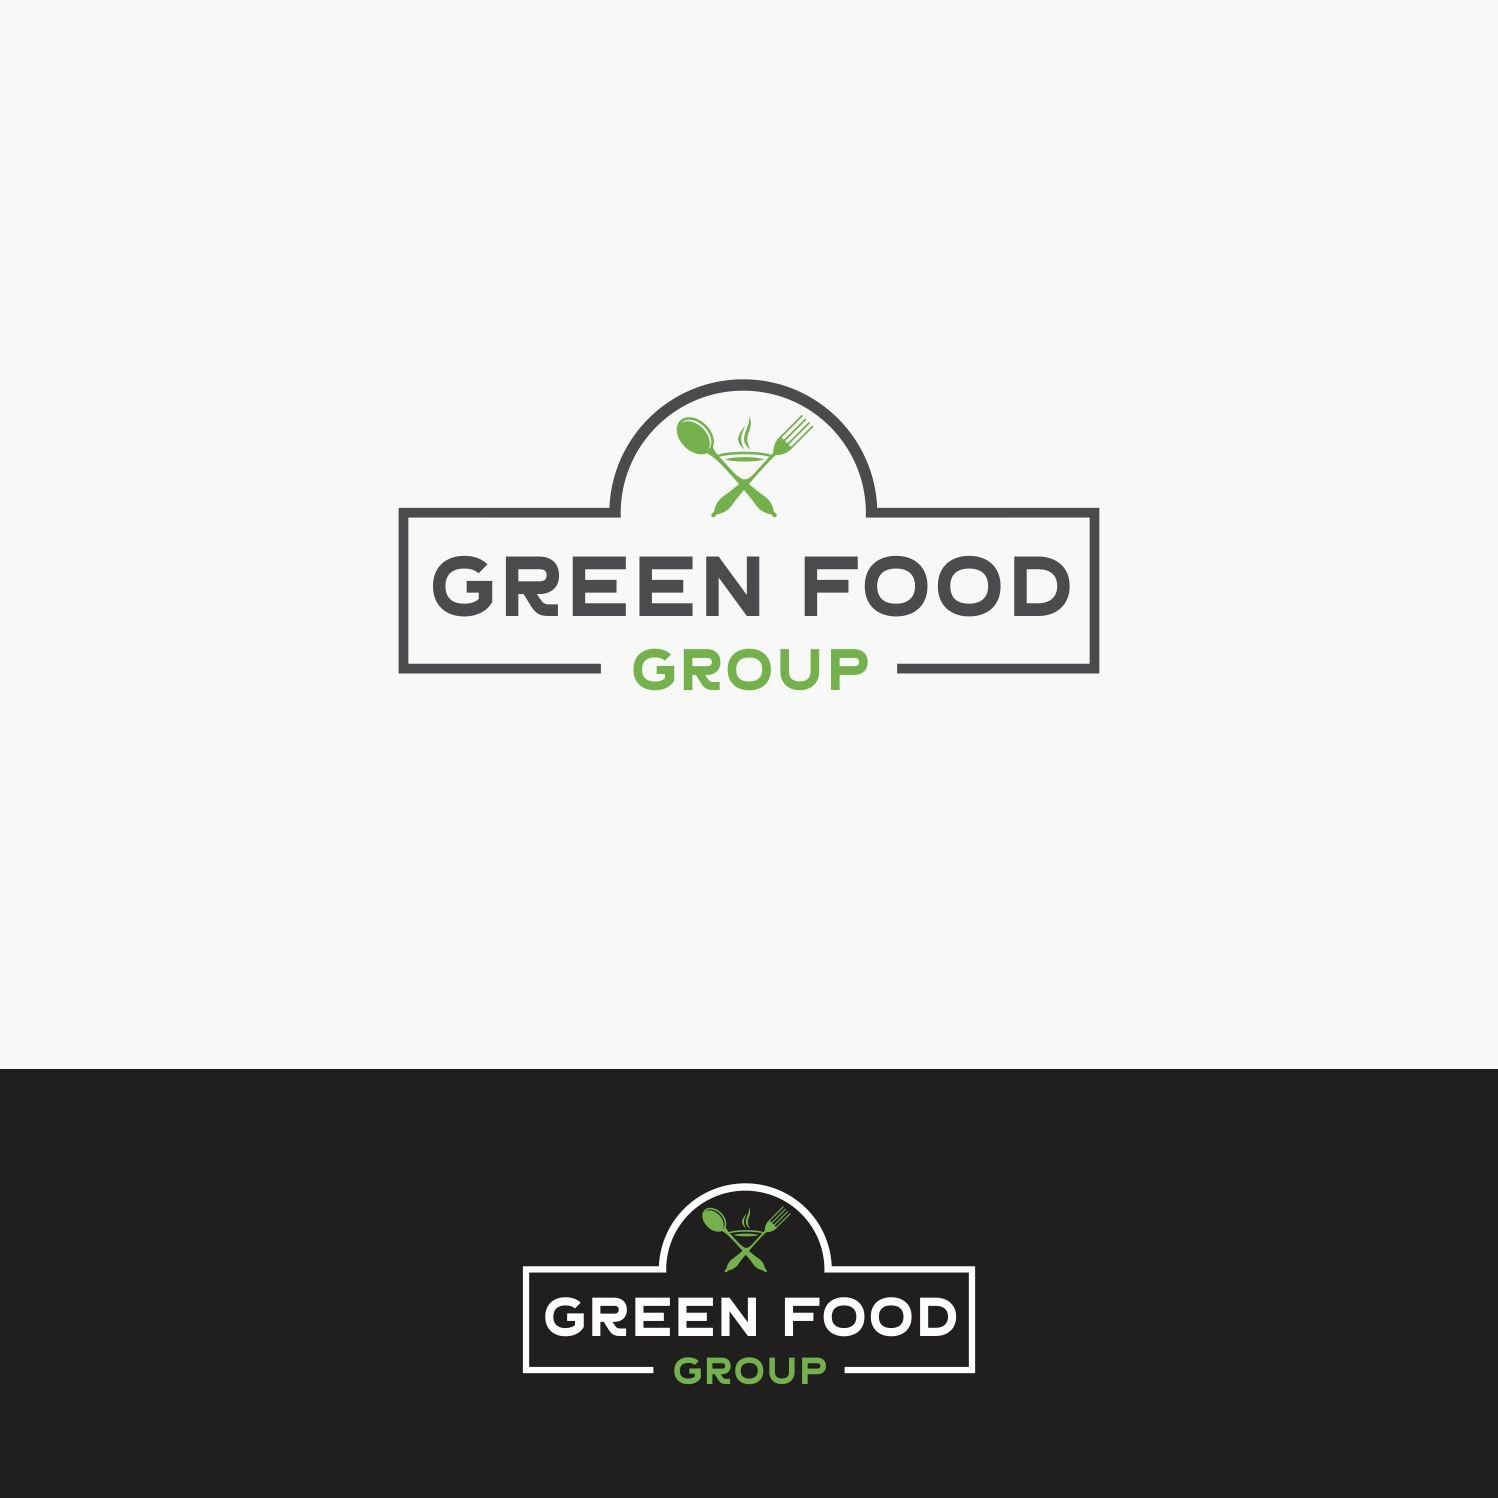 Green and White Restaurant Logo - Elegant, Playful, Restaurant Logo Design for Green Food Group GFG